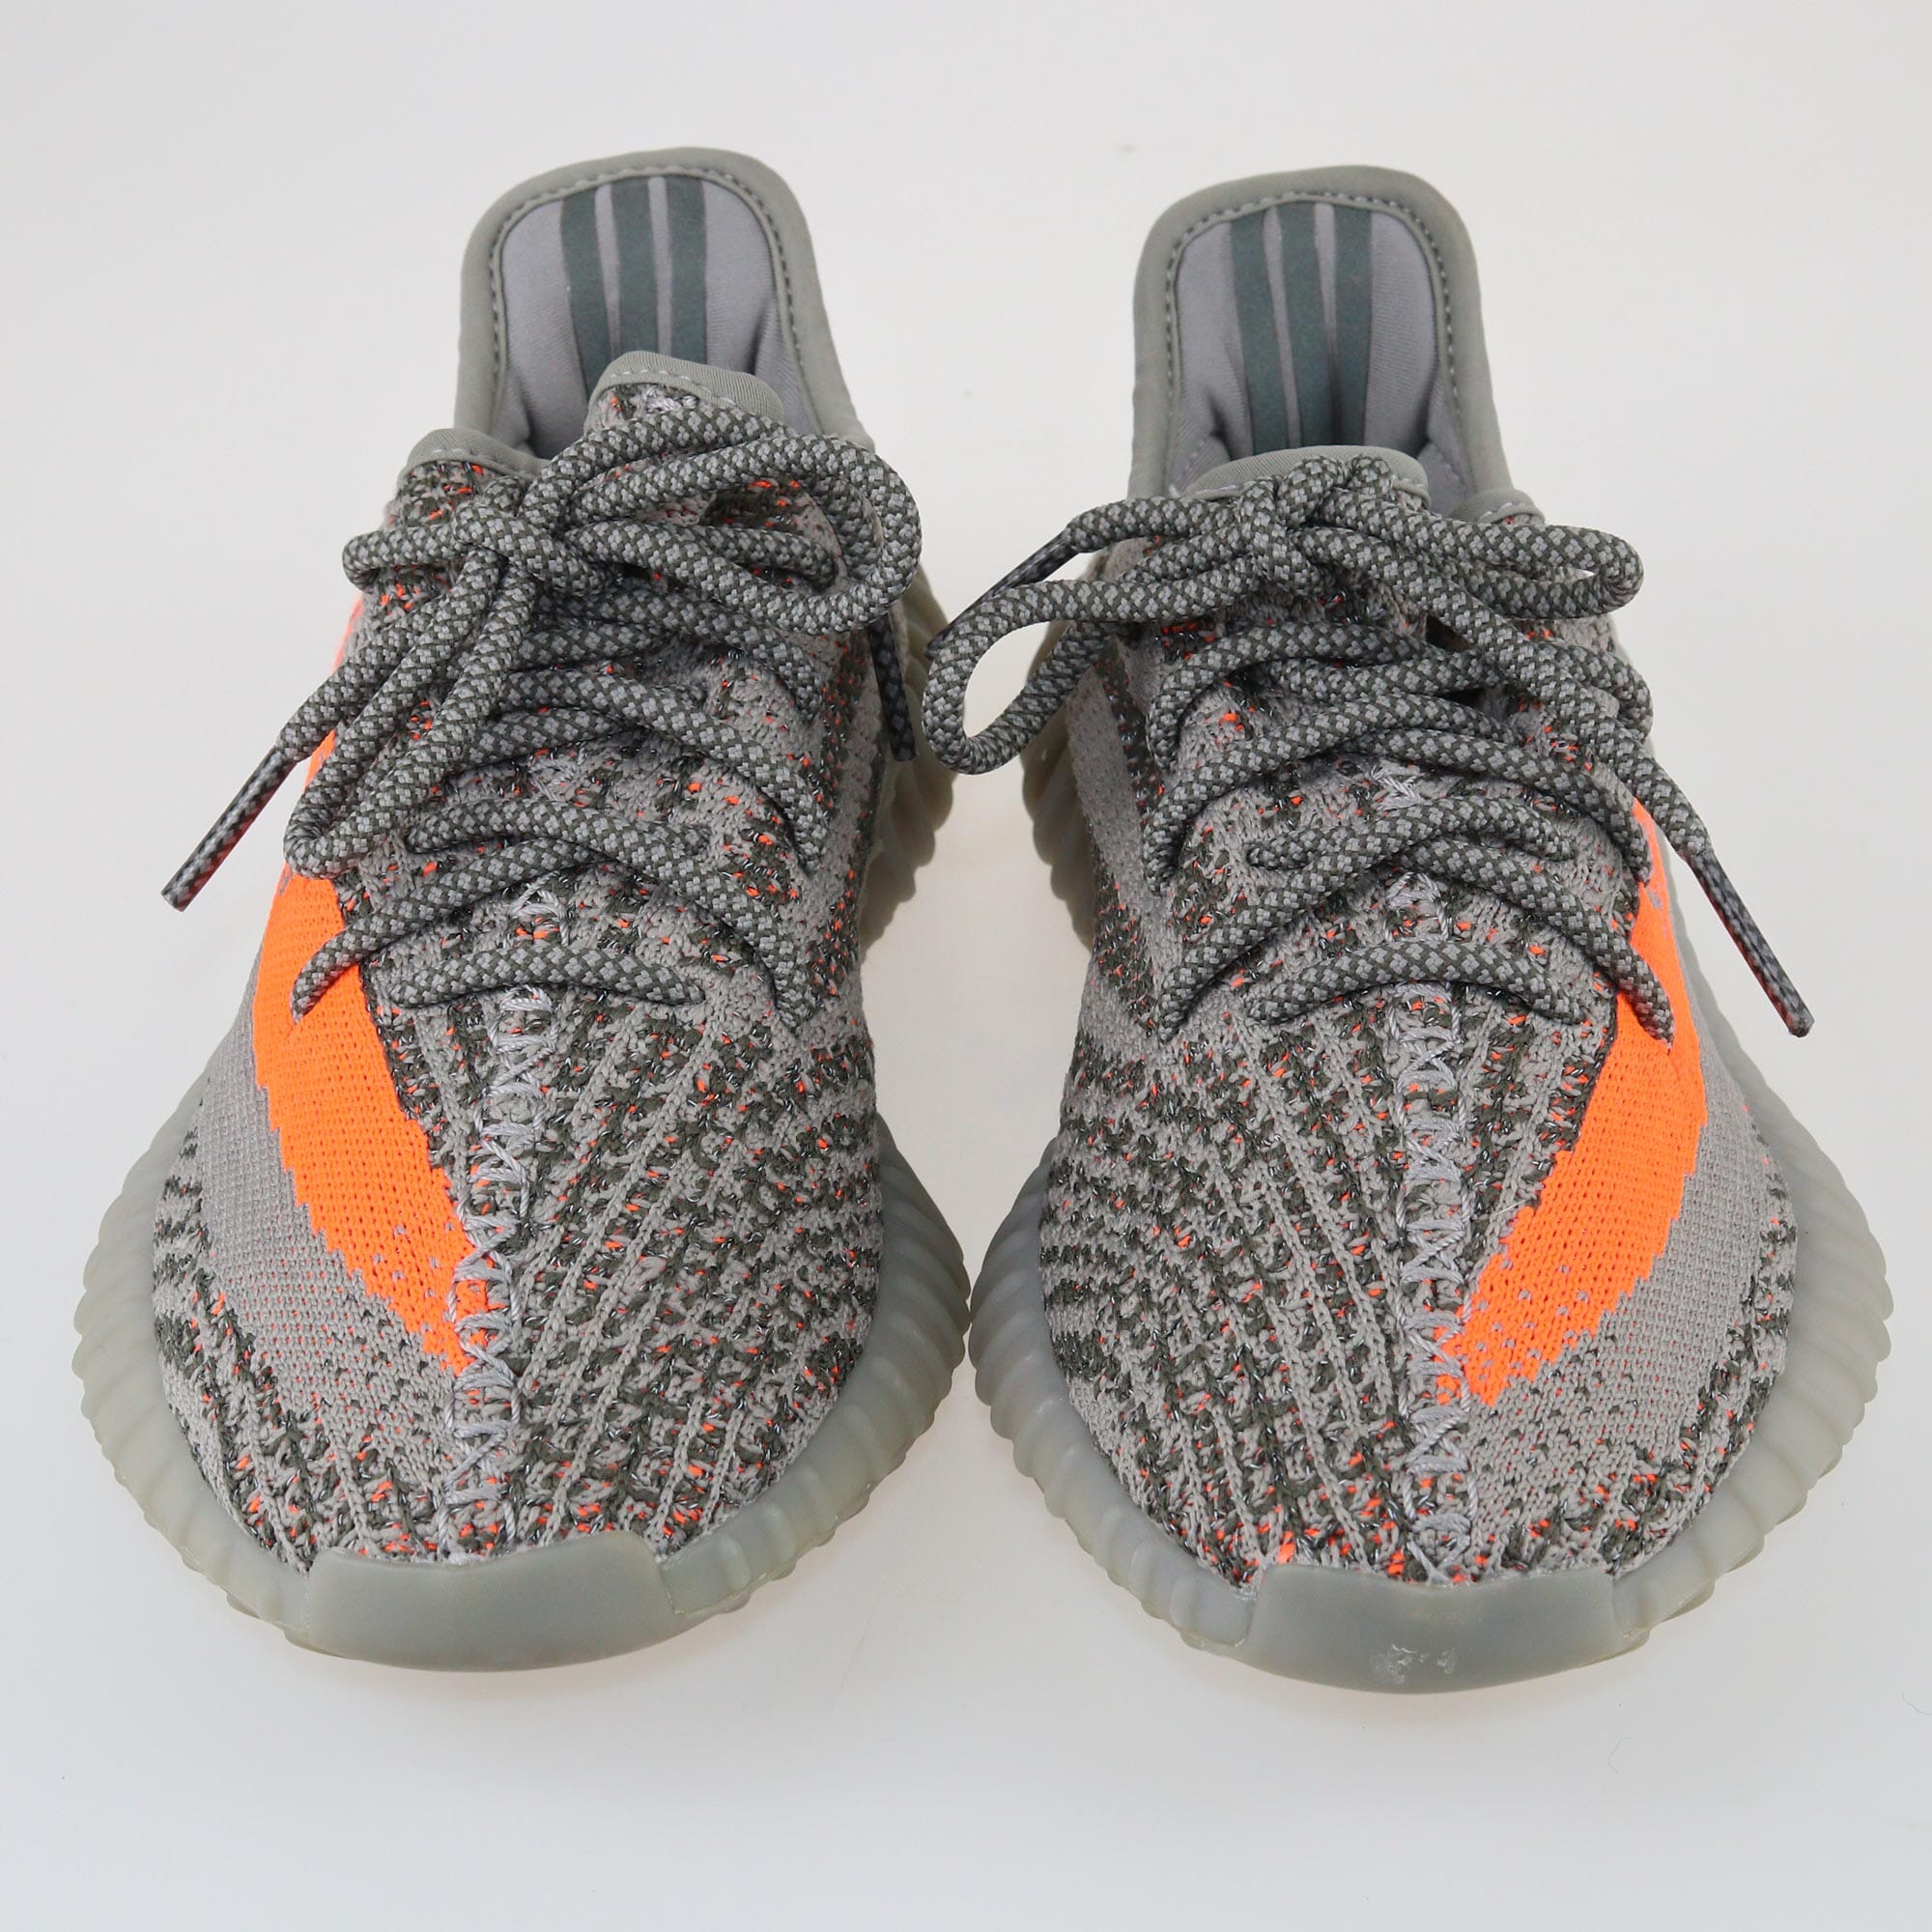 Yeezy x Adidas Grey/Orange Boost 350 V2 Beluga Reflective Sneakers Shoes Yeezy 